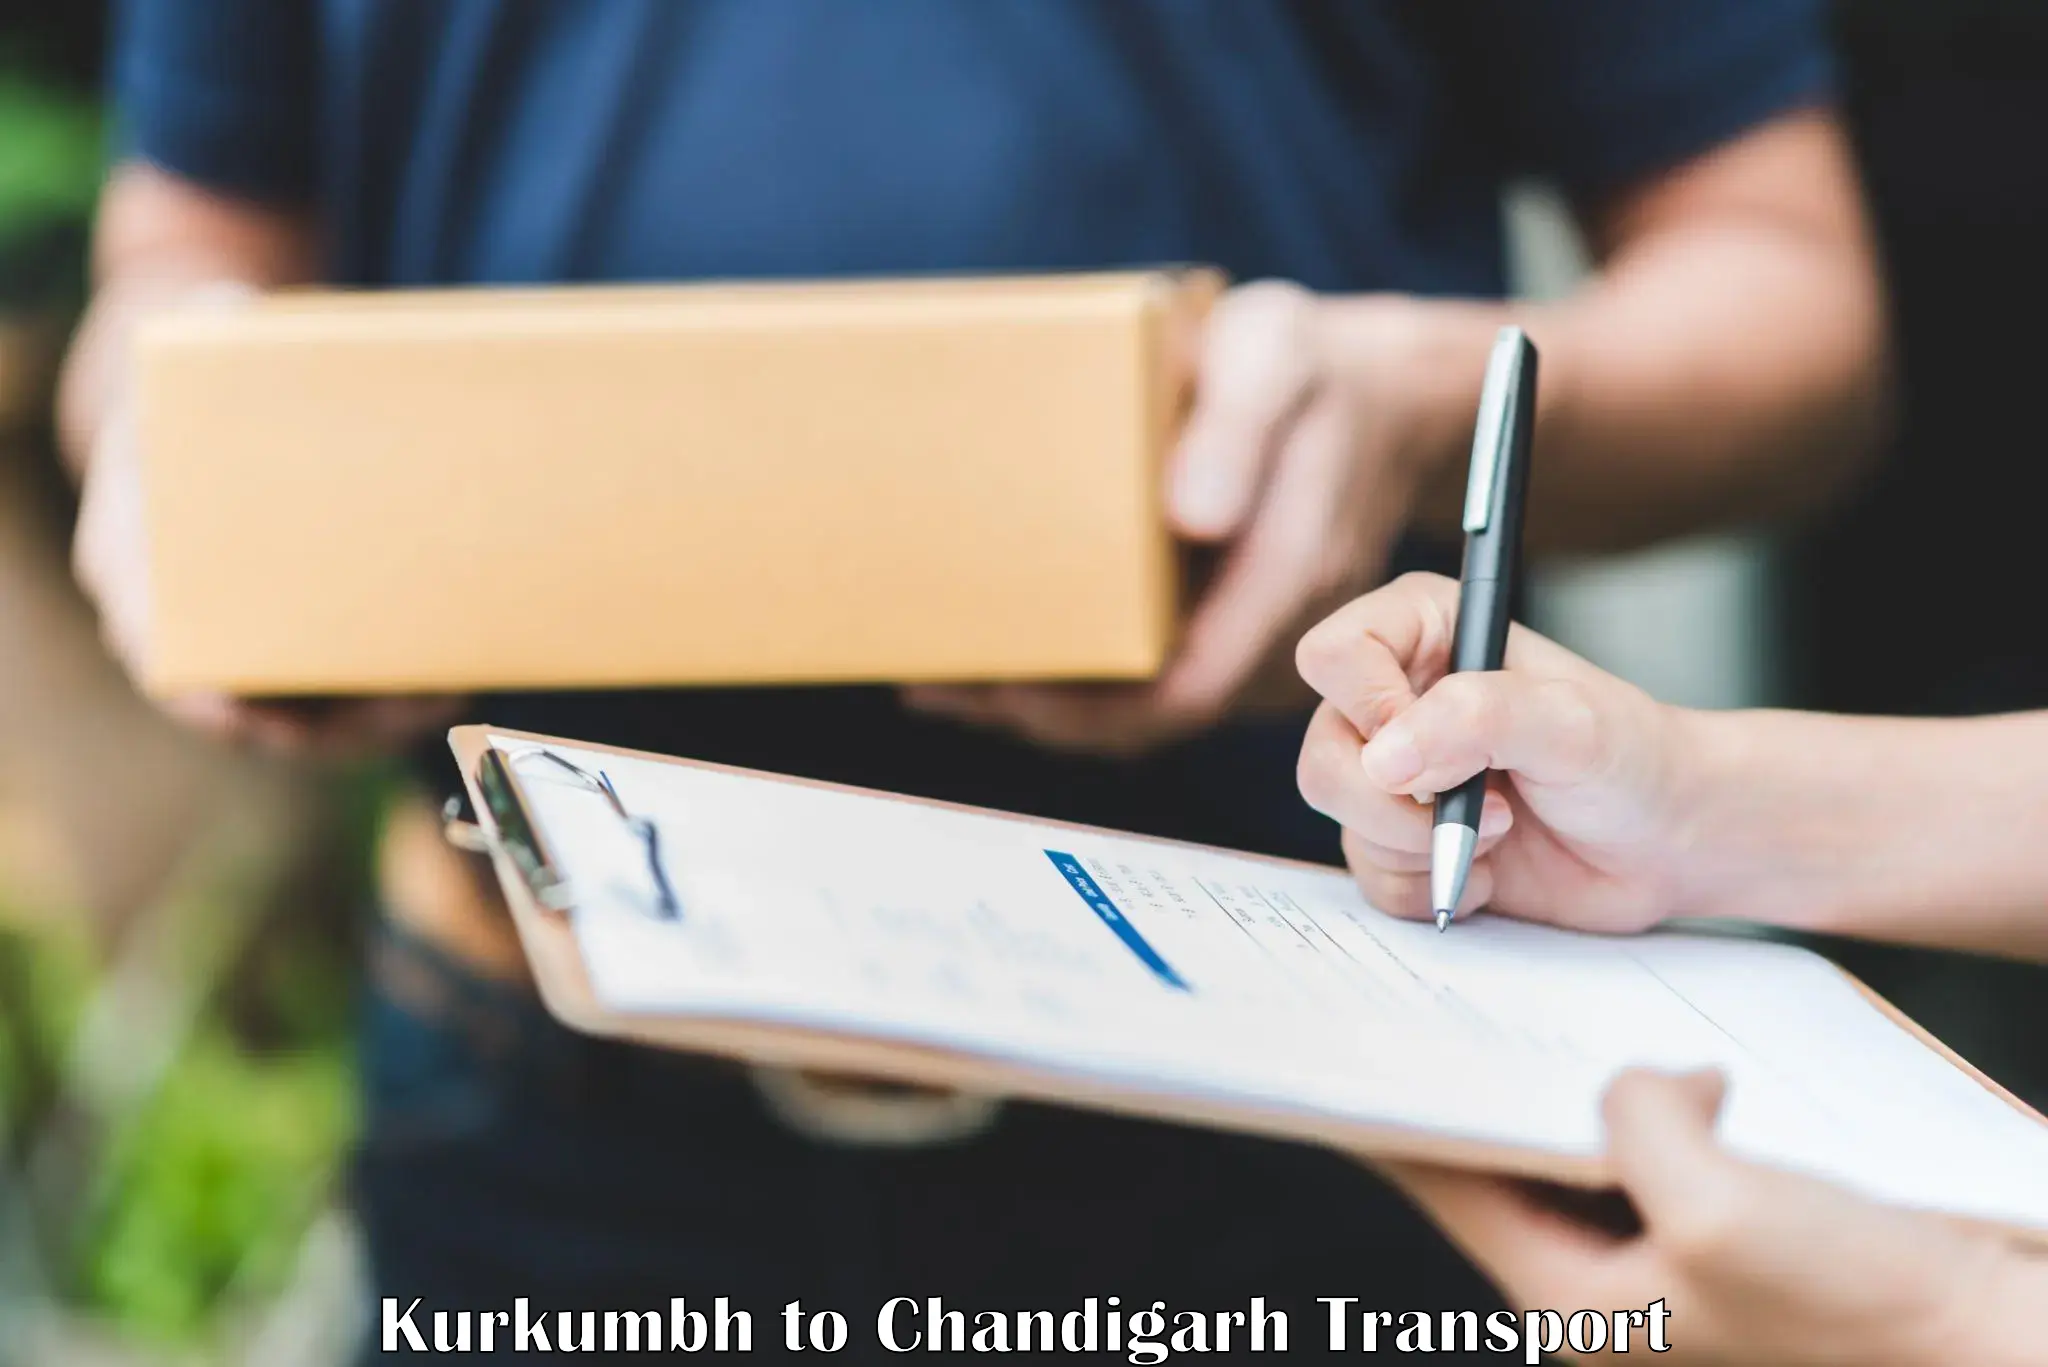 Transport in sharing Kurkumbh to Chandigarh